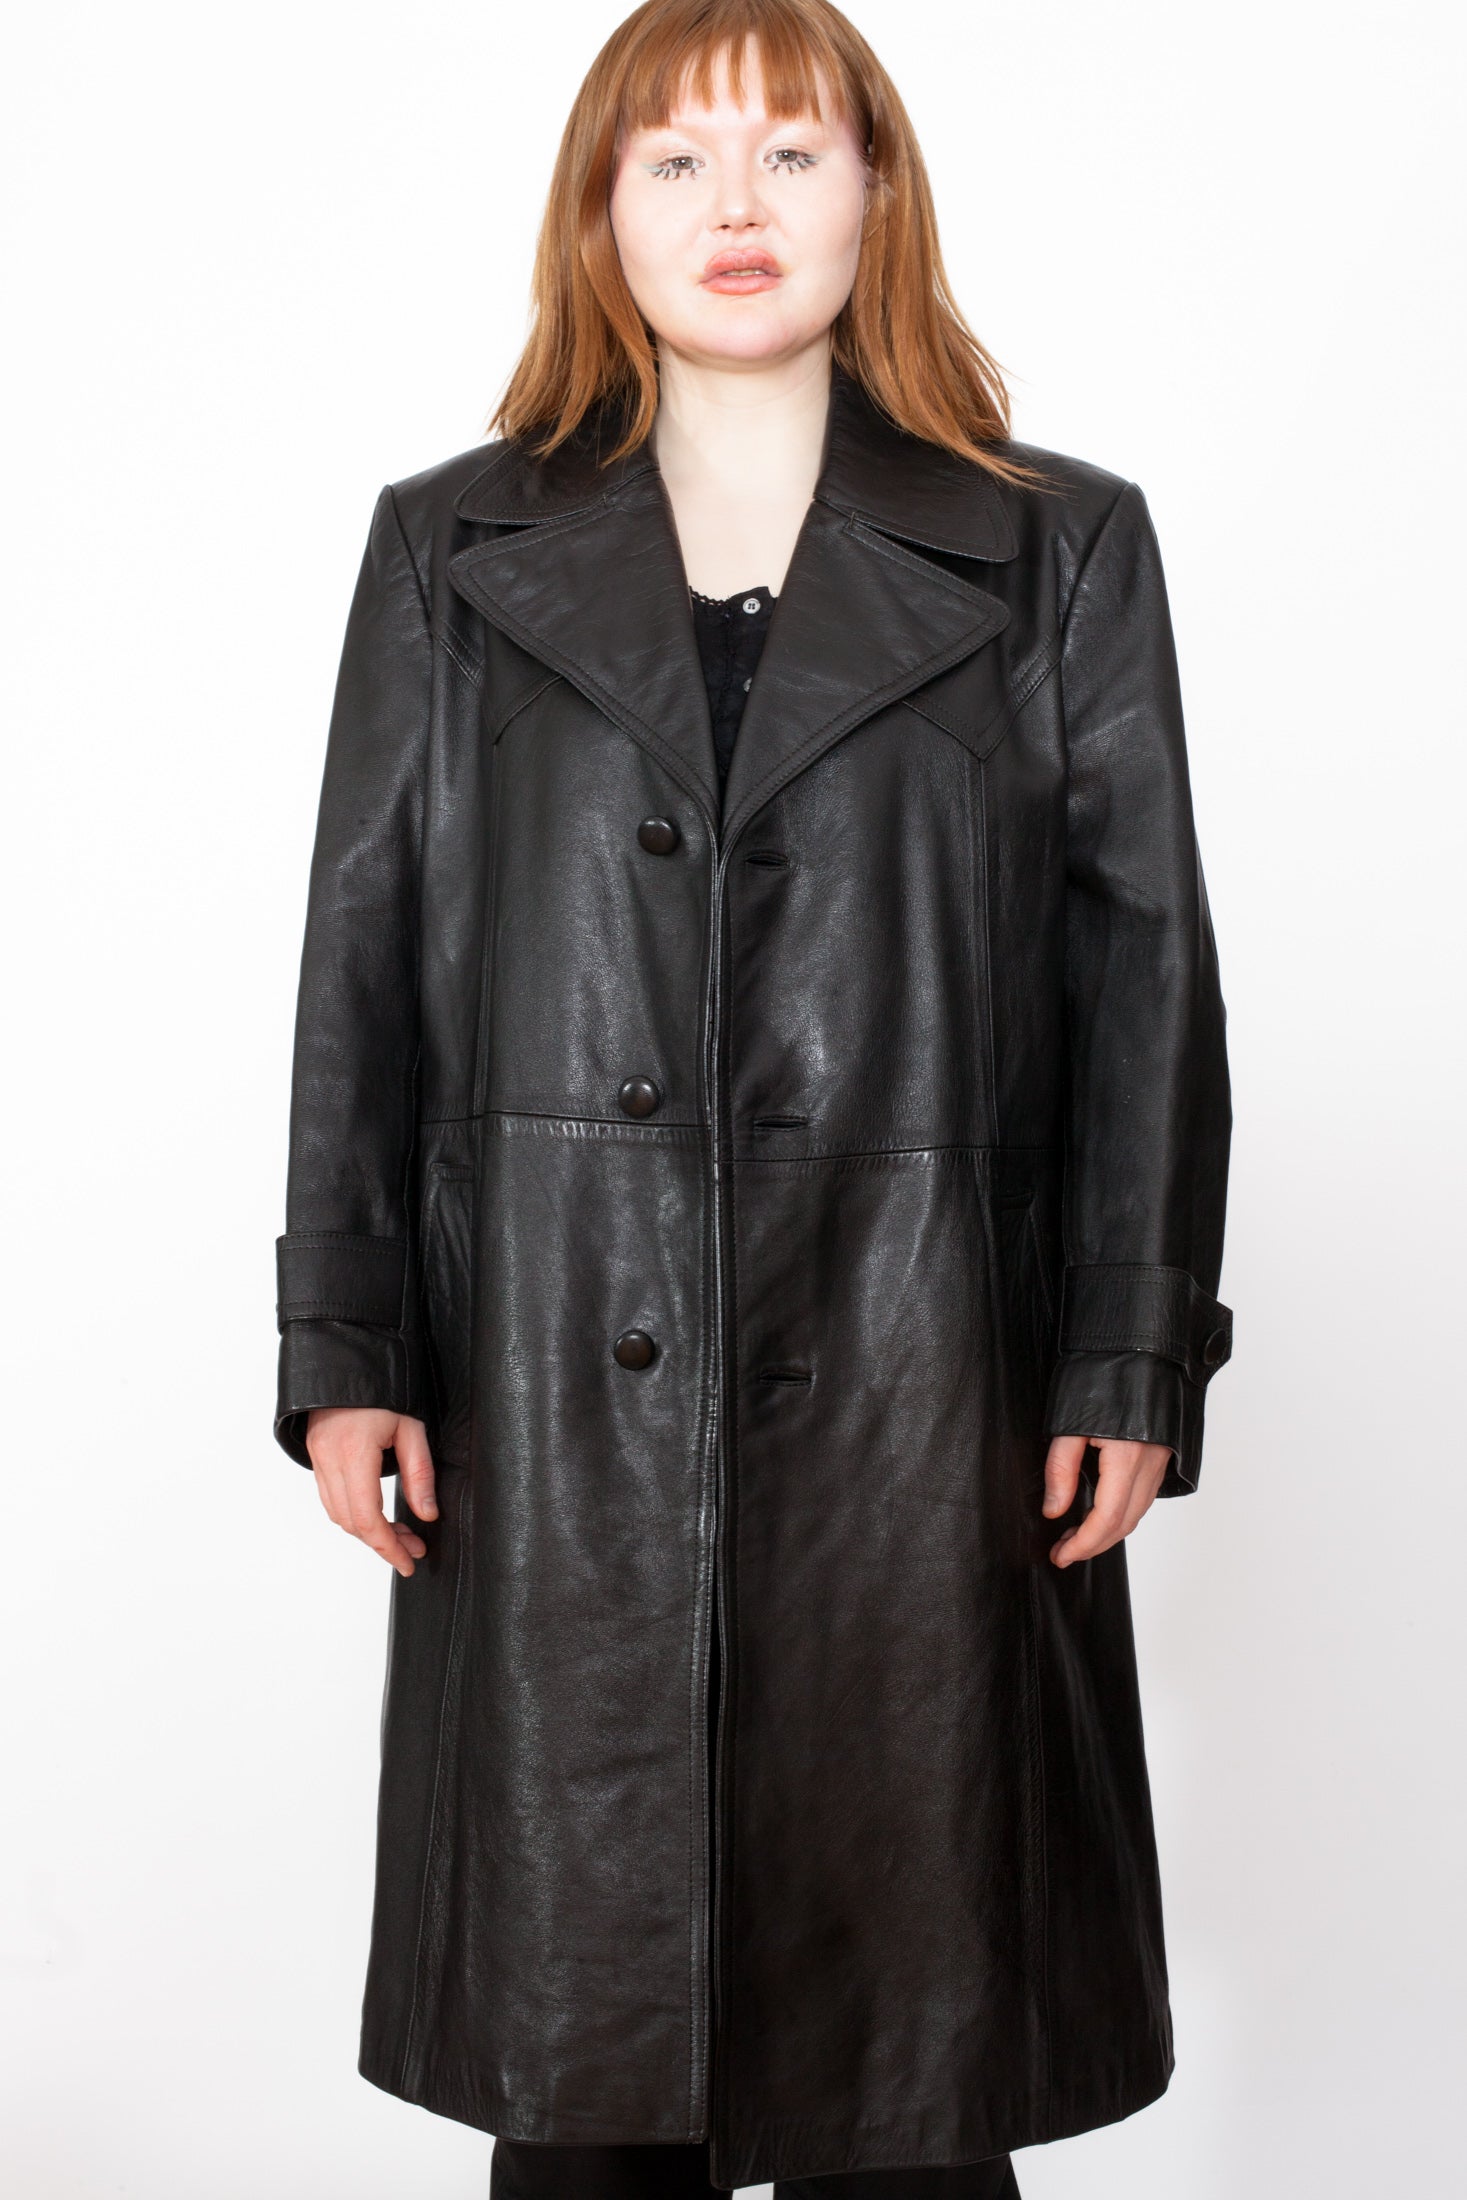 着丈約115cm✨80’s vintage leather trench coat